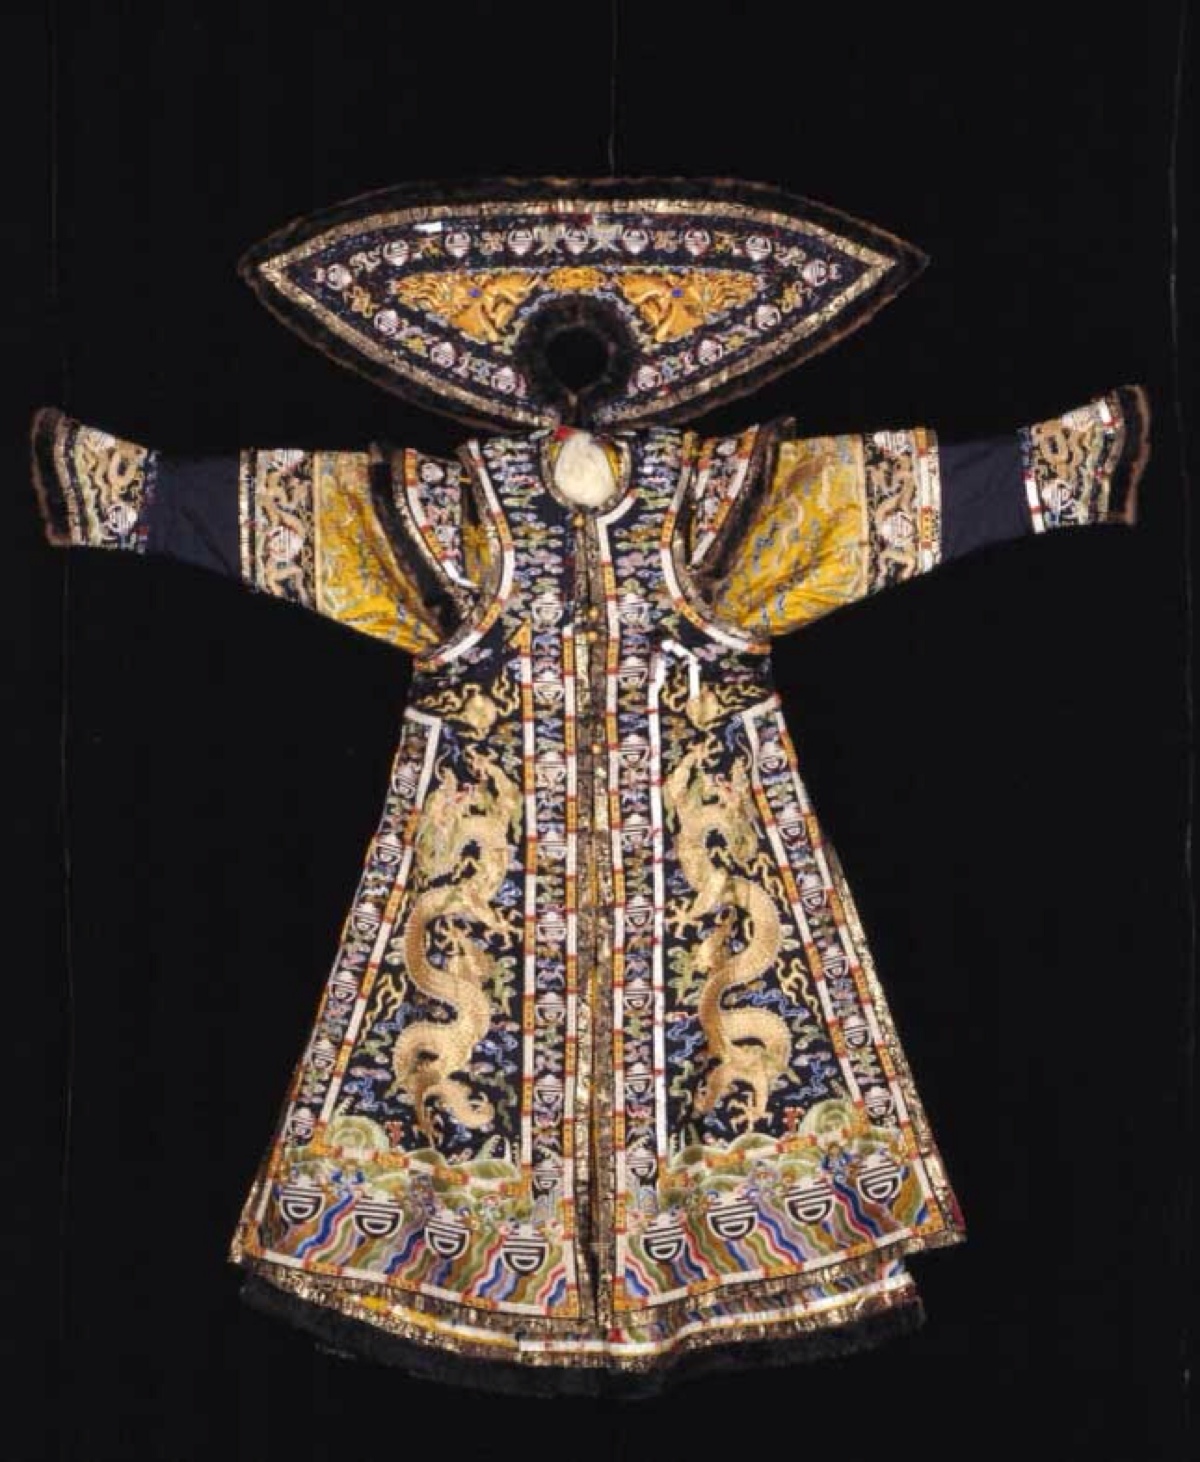 明黄色缎绣云龙金版嵌珠石银鼠皮朝袍,皇后朝袍在其所有服装中等级最